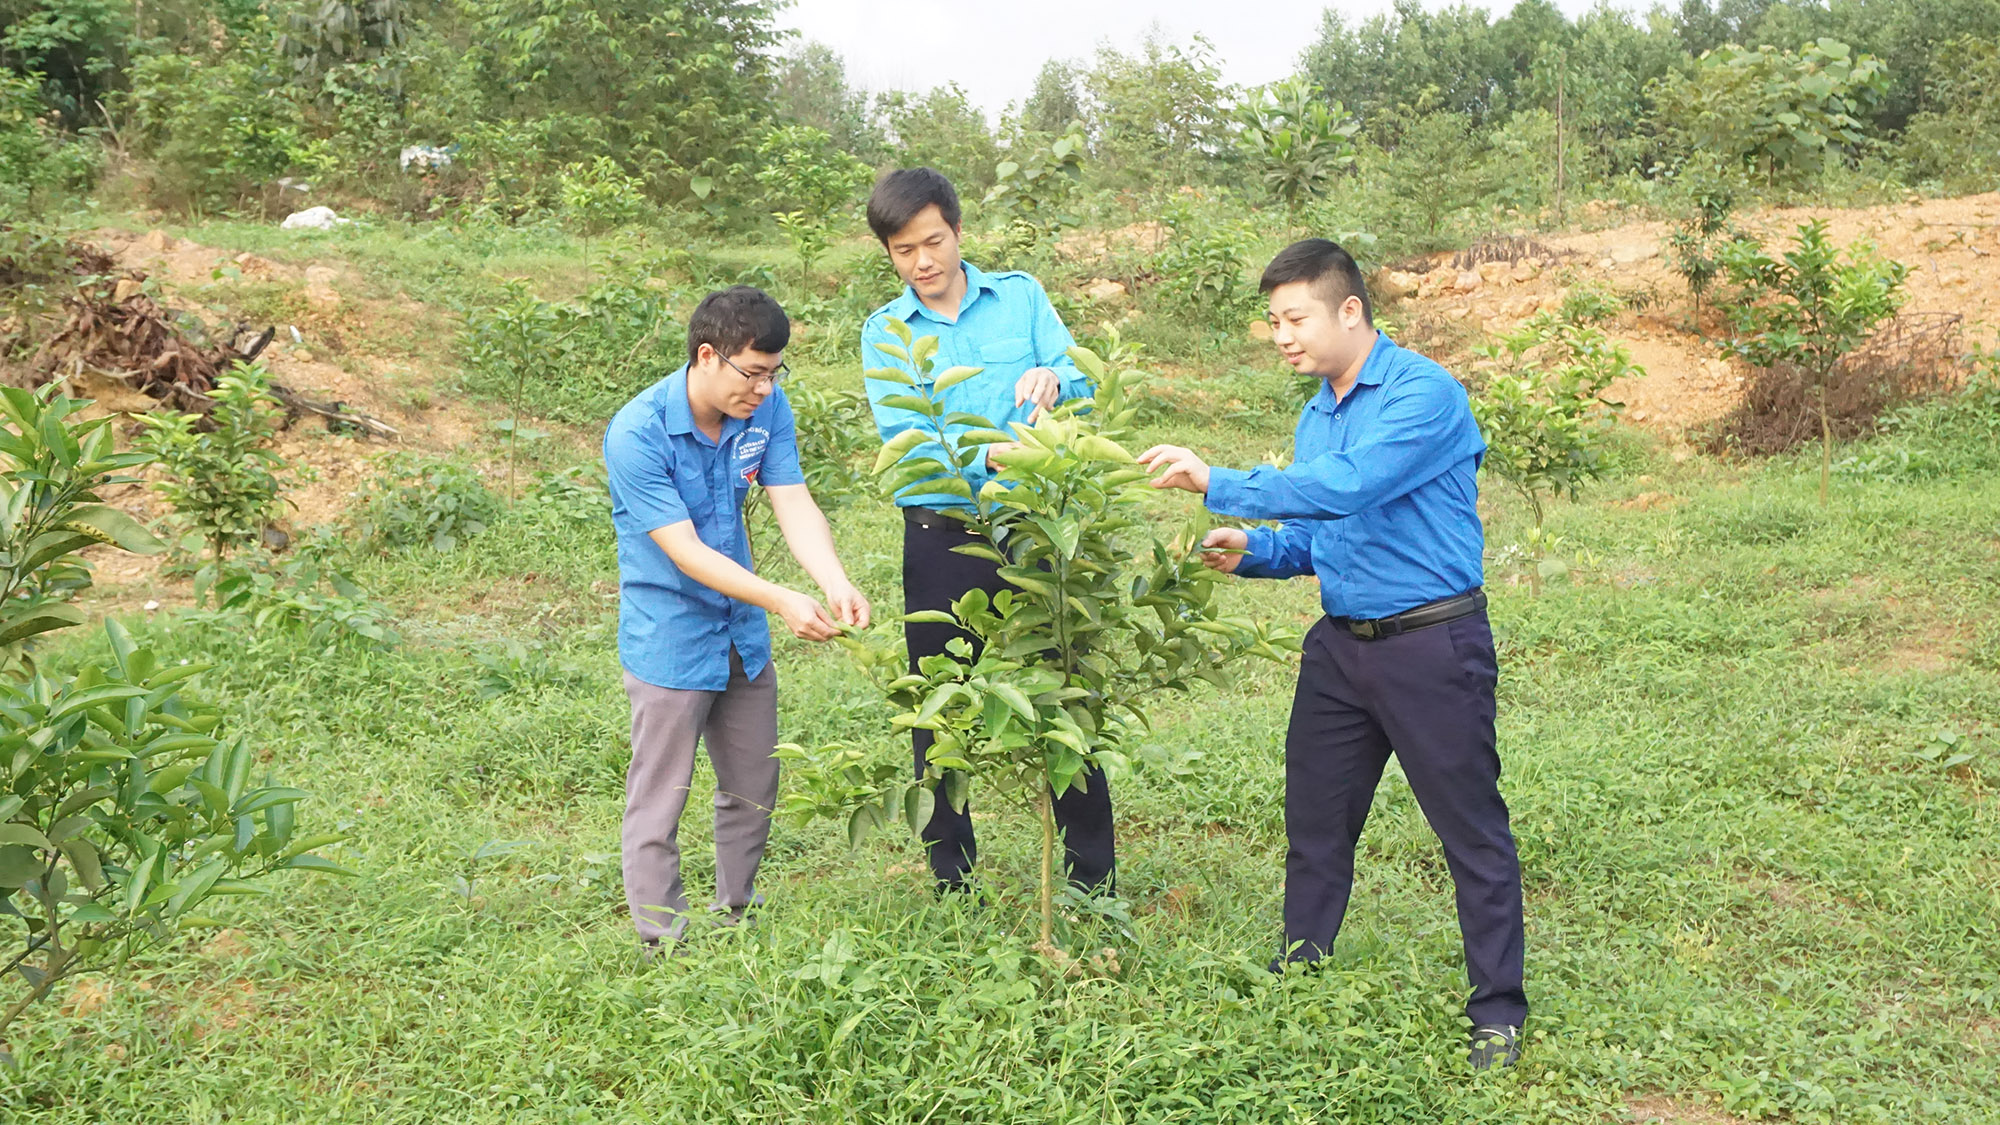 Mô hình trồng cây ăn quả và dược liệu của anh Trần Văn Linh, thôn Khe Nháng, xã Thanh Lâm (đứng giữa), ước tính cho thu nhập từ 150-200 triệu đồng/năm.